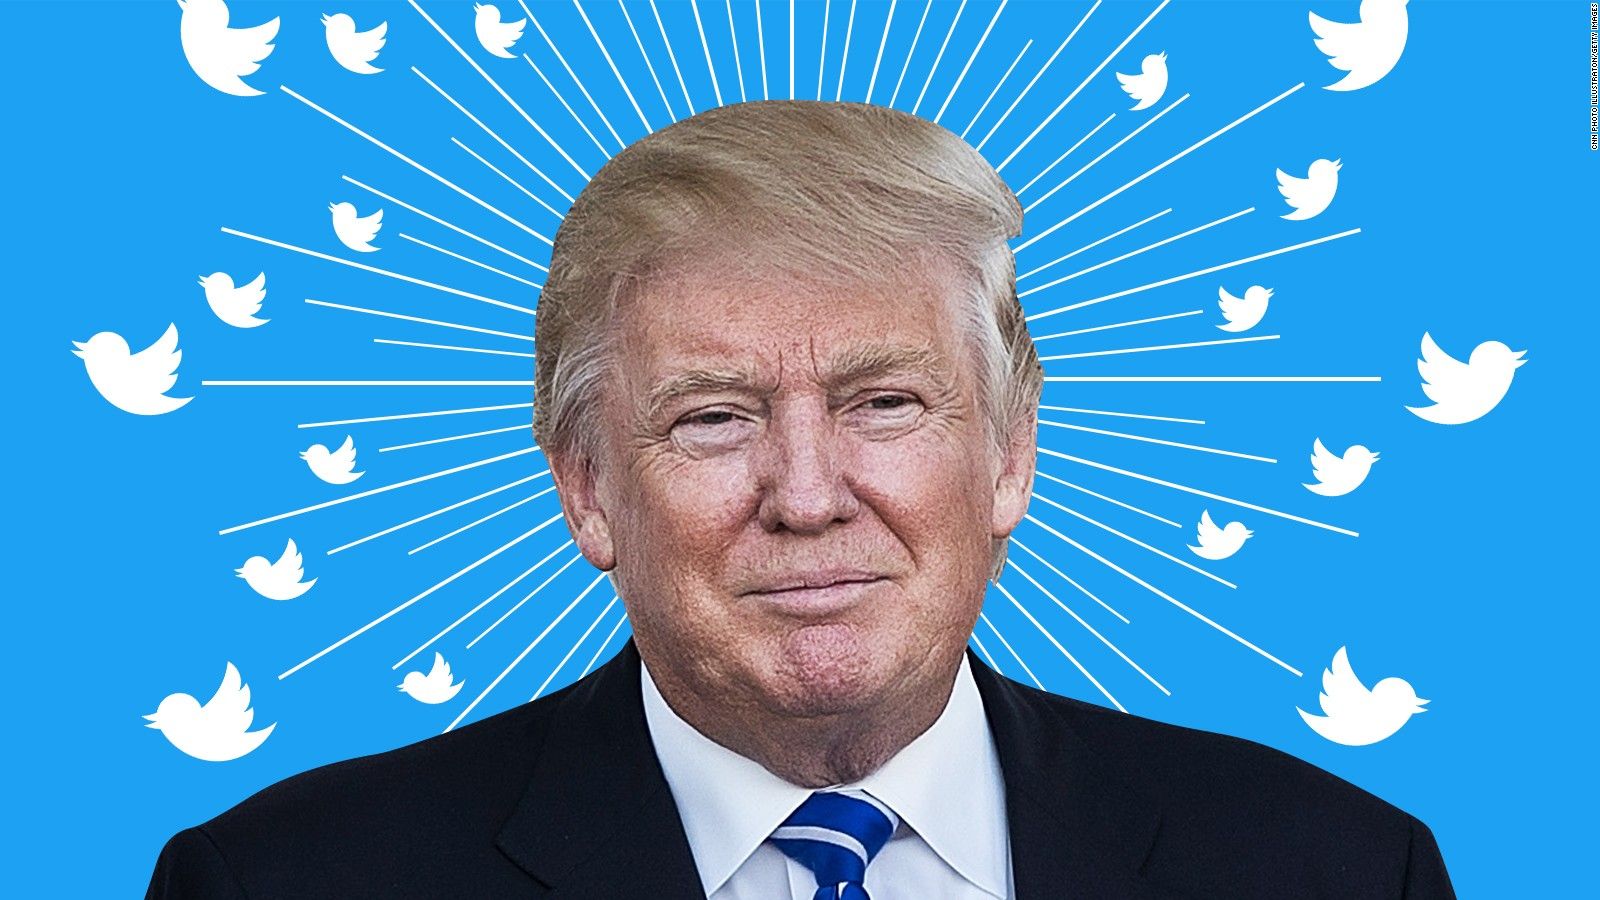 Трамп проти Twitter. Що блокування президента США означає для свободи слова?